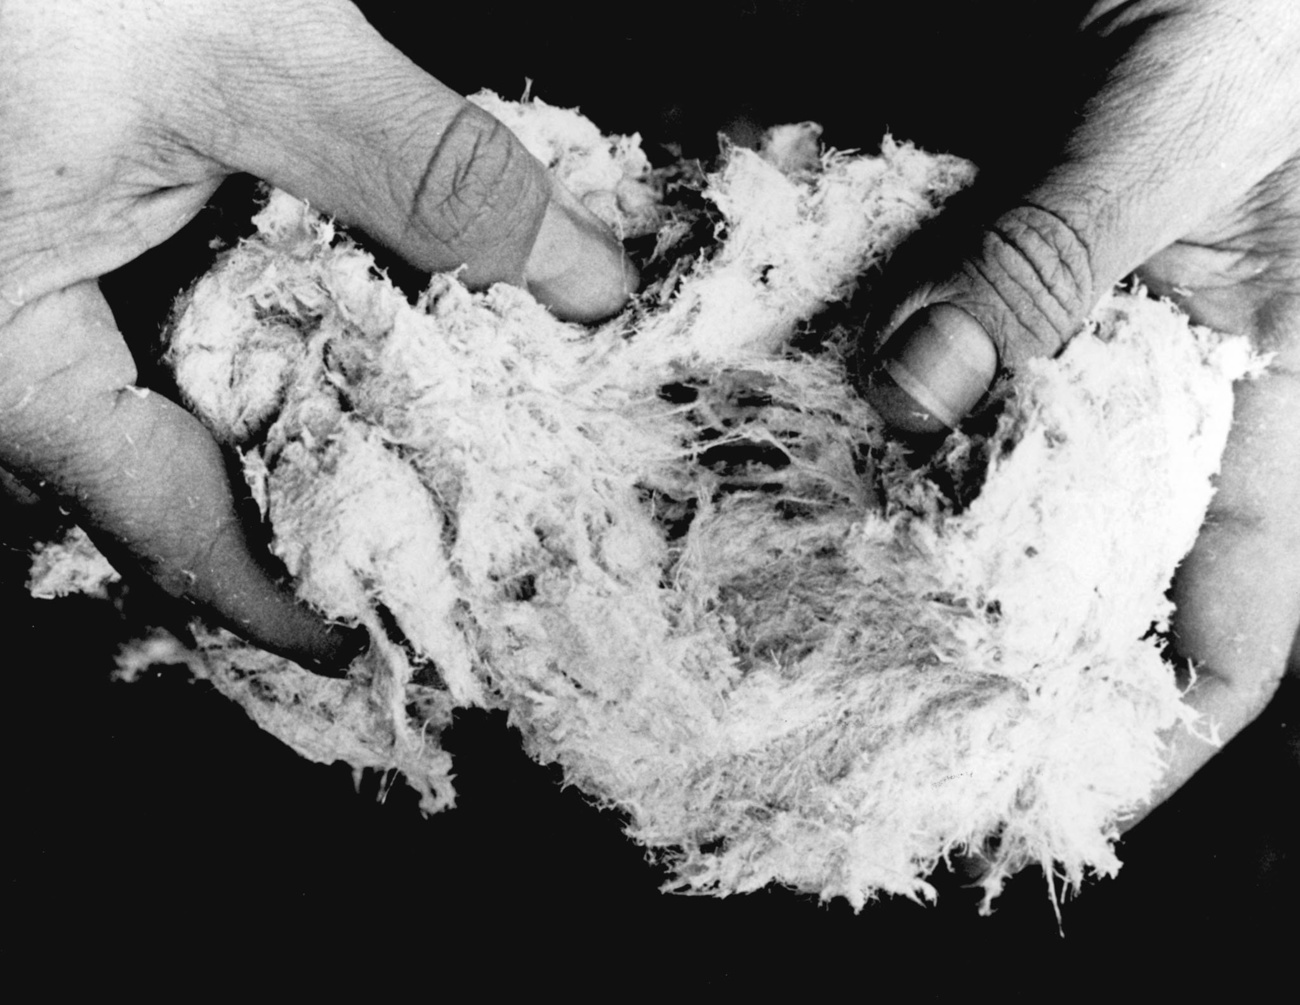 Immagine bianco e nero di mani con fibre di amianto.